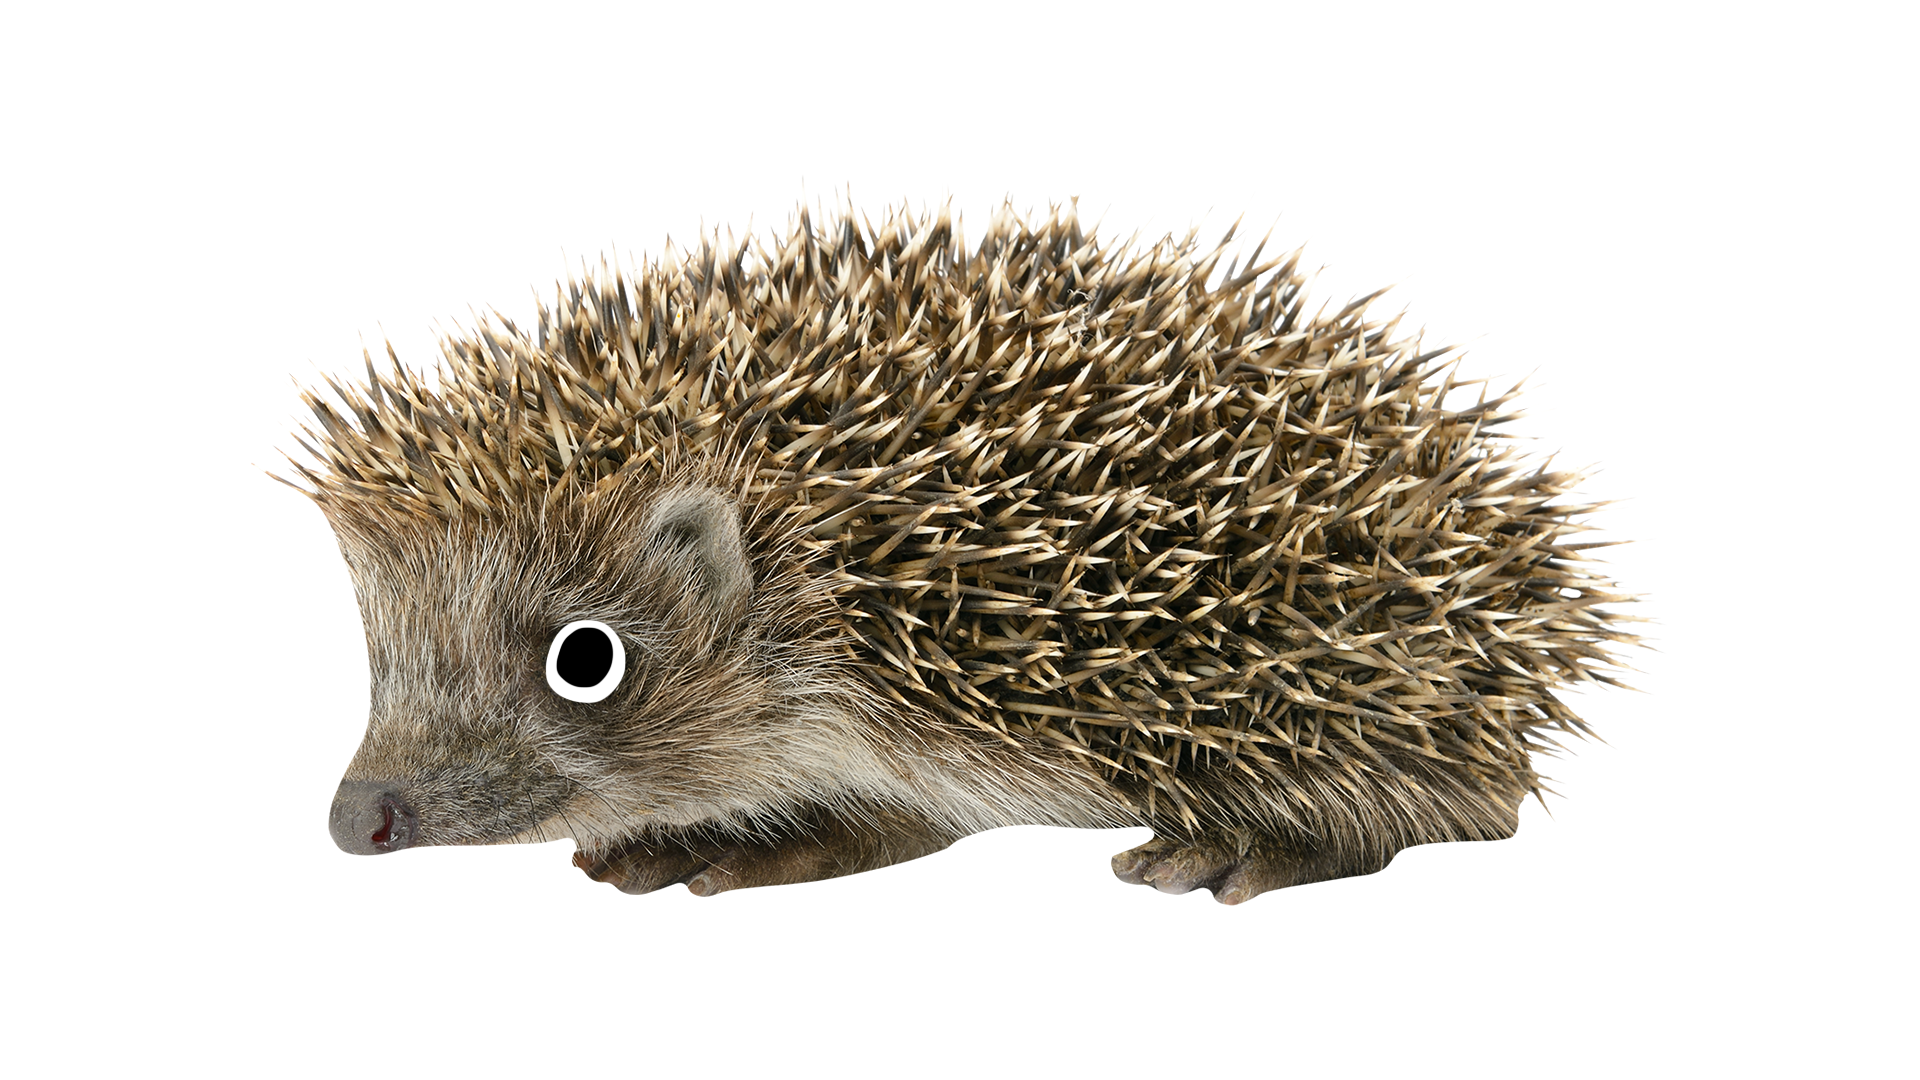 A prickly hedgehog